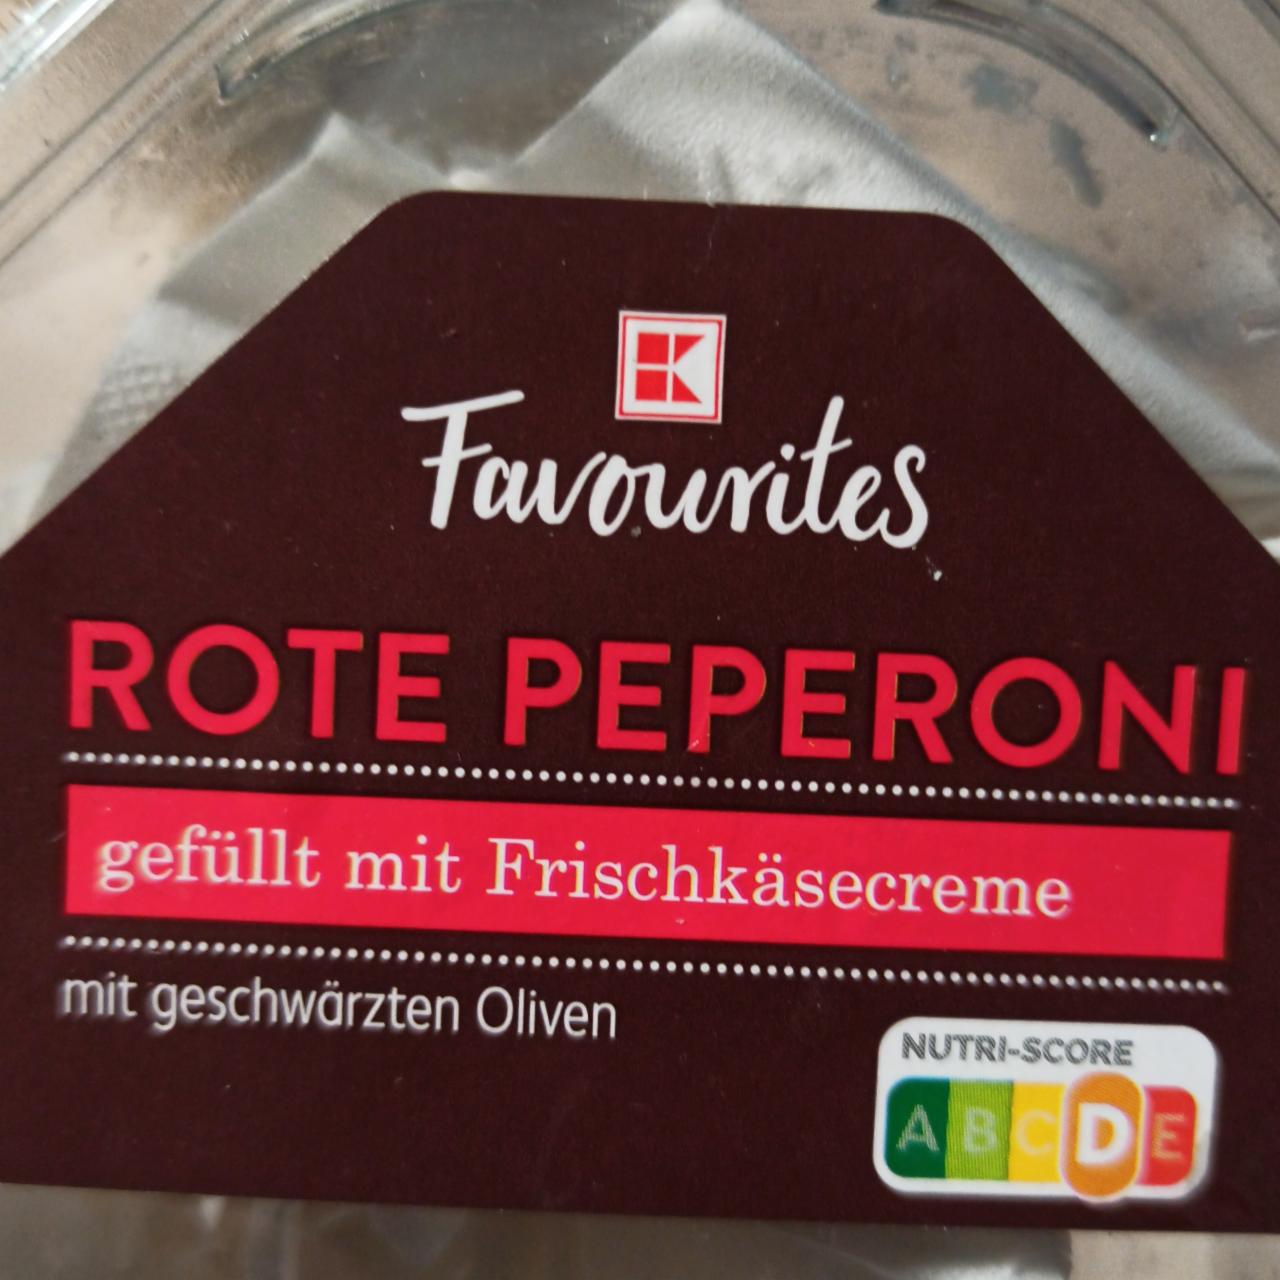 Fotografie - Rote Peperoni gefüllt mit Frischkäsecreme K-Favourites